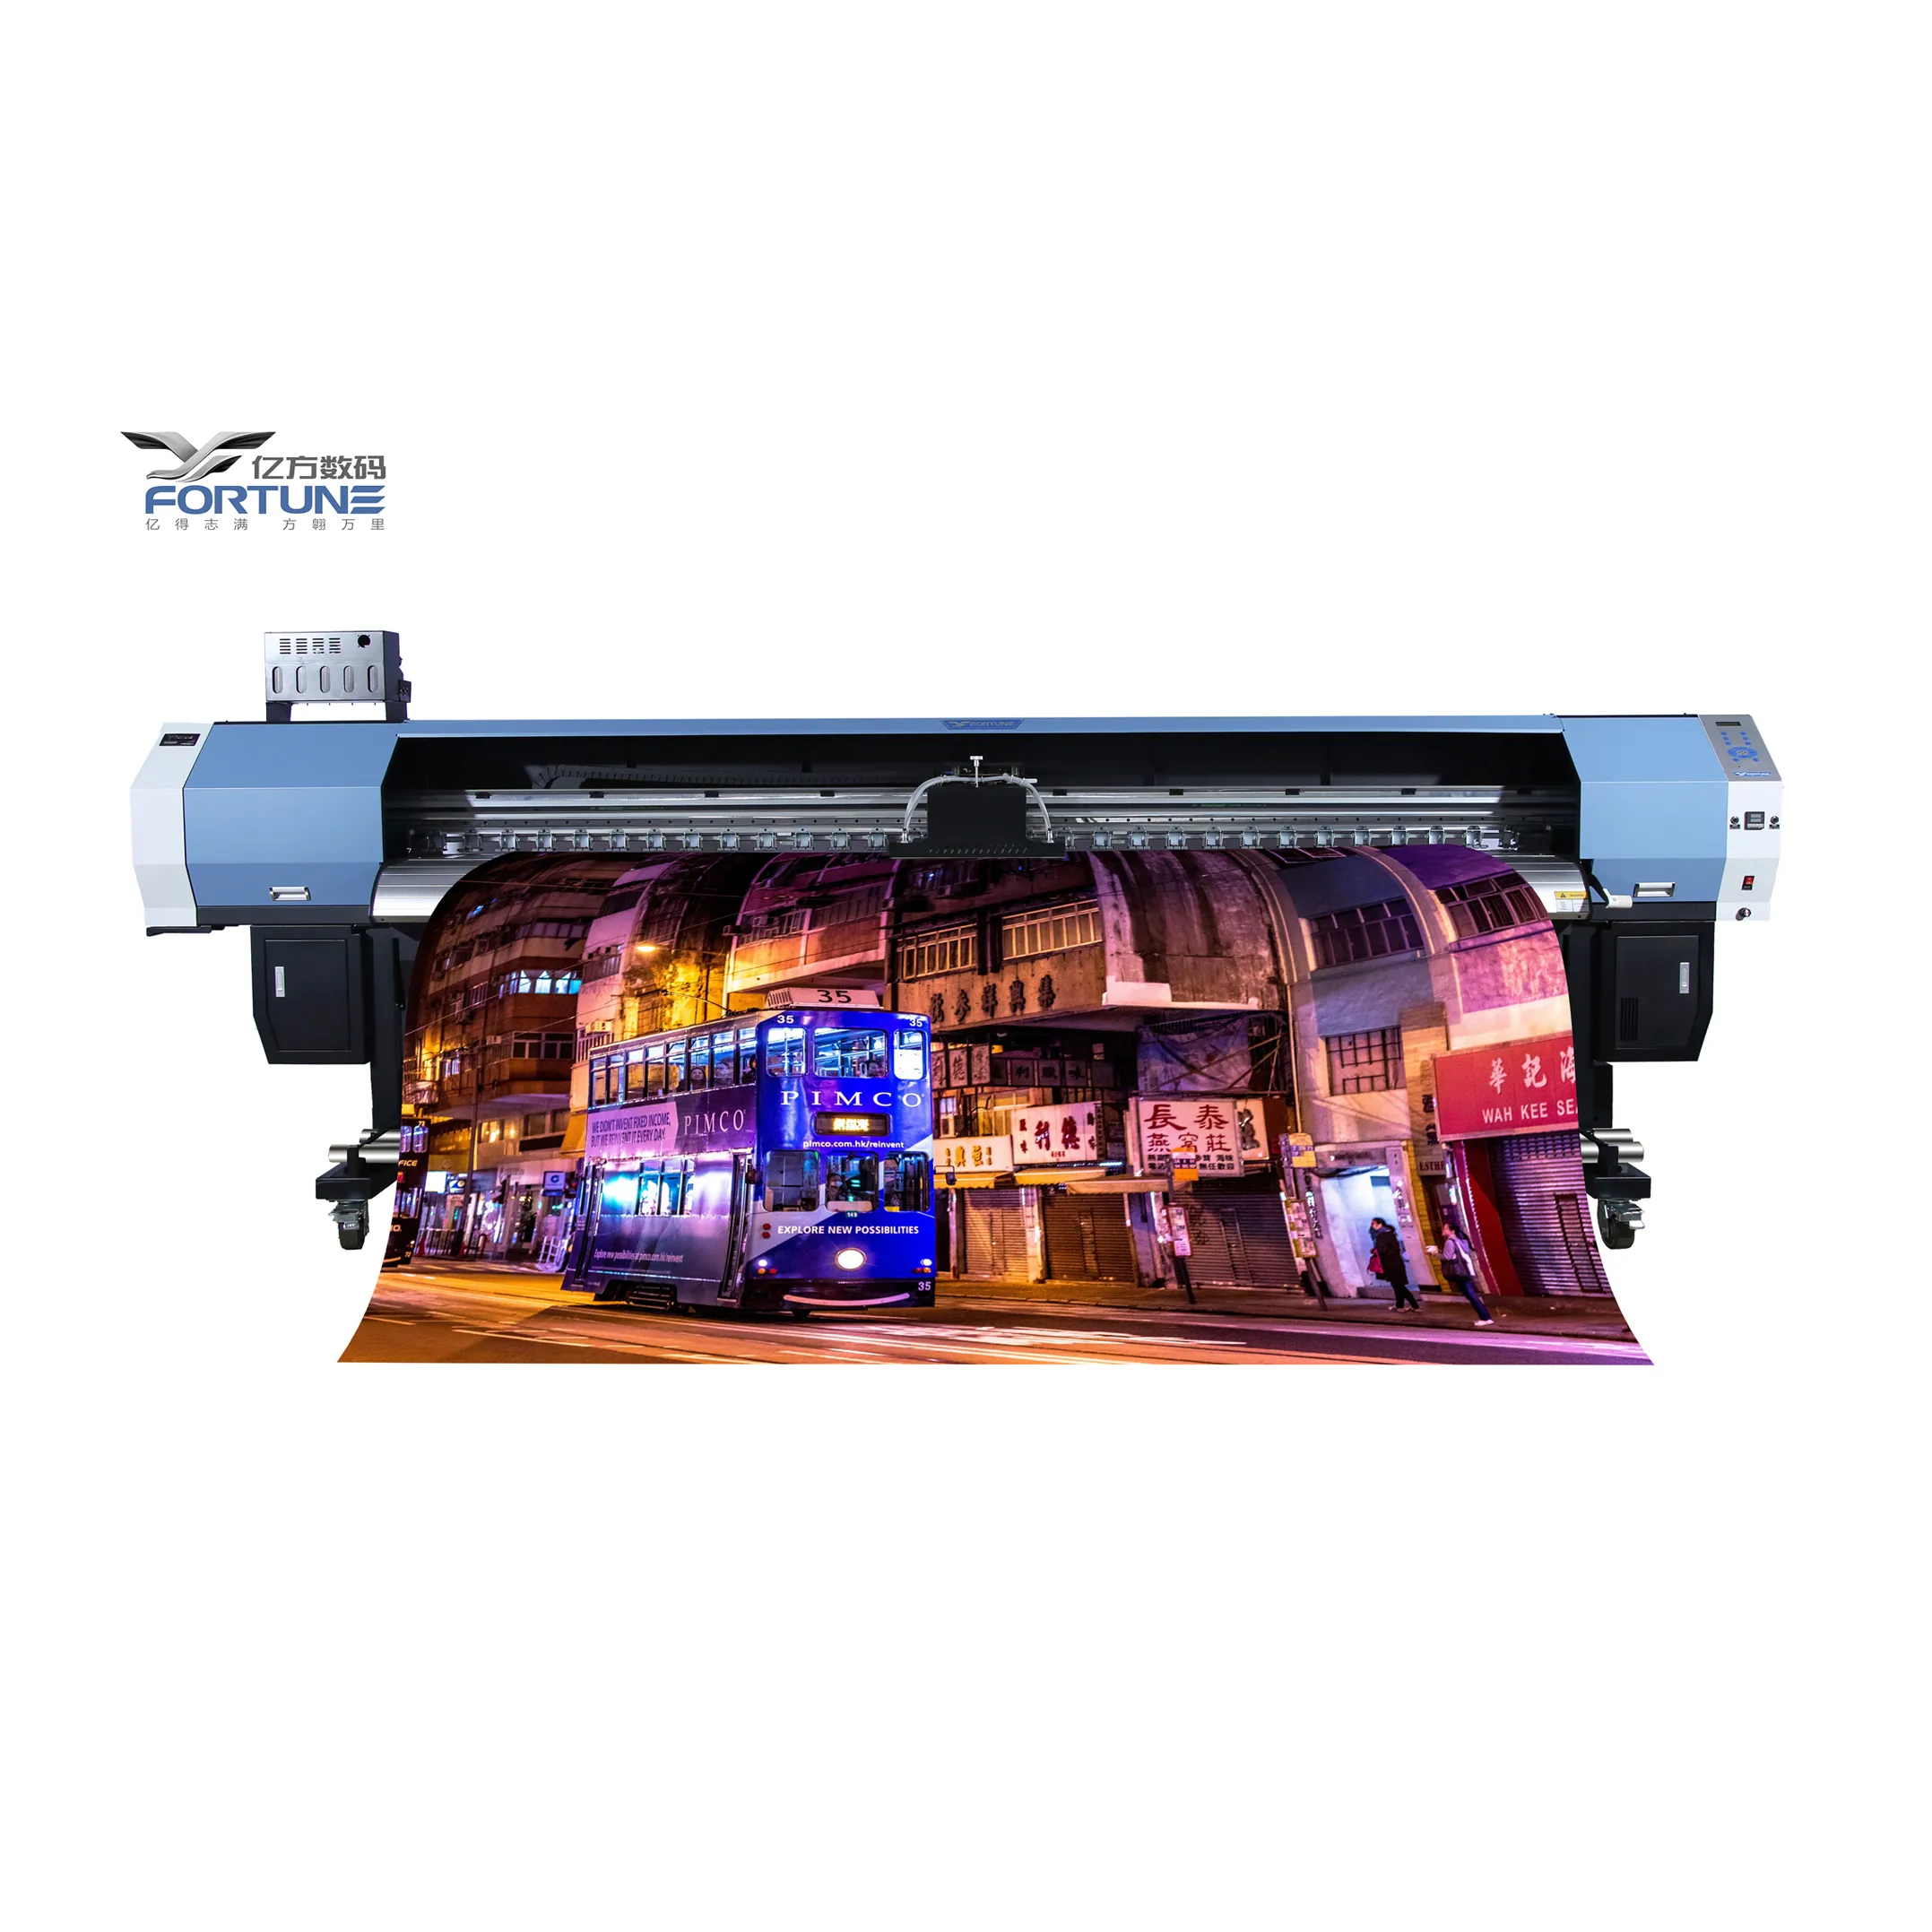 Stampante Led Uv Fortune 3.2m con stampa Dx5 carta da parati per stampante Eco solvente di grande formato 3d